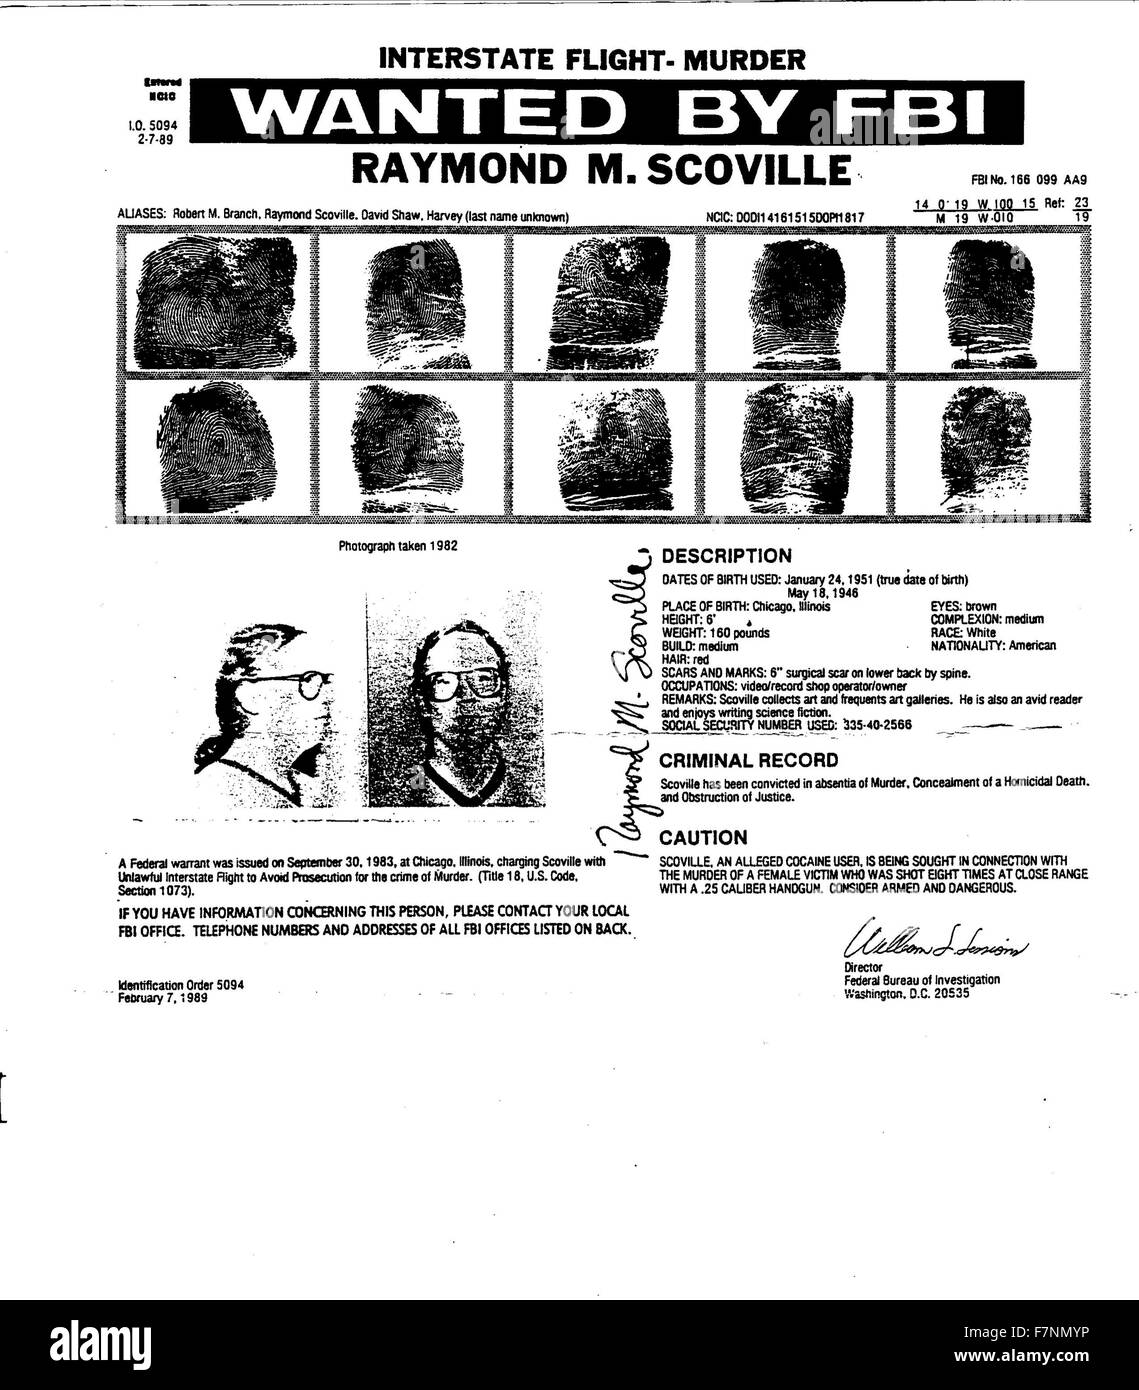 La plupart des avis de recherche du FBI pour Raymond M. Scoville. Scoville a été arrêté pour le meurtre de son amant et son associé Colleen Rachich. Il lui a tiré huit fois en 1982, mais a disparu après son arrestation et n'a toujours pas été trouvée. Il a été reconnu coupable du meurtre et condamné en son absence à 40 ans. Banque D'Images